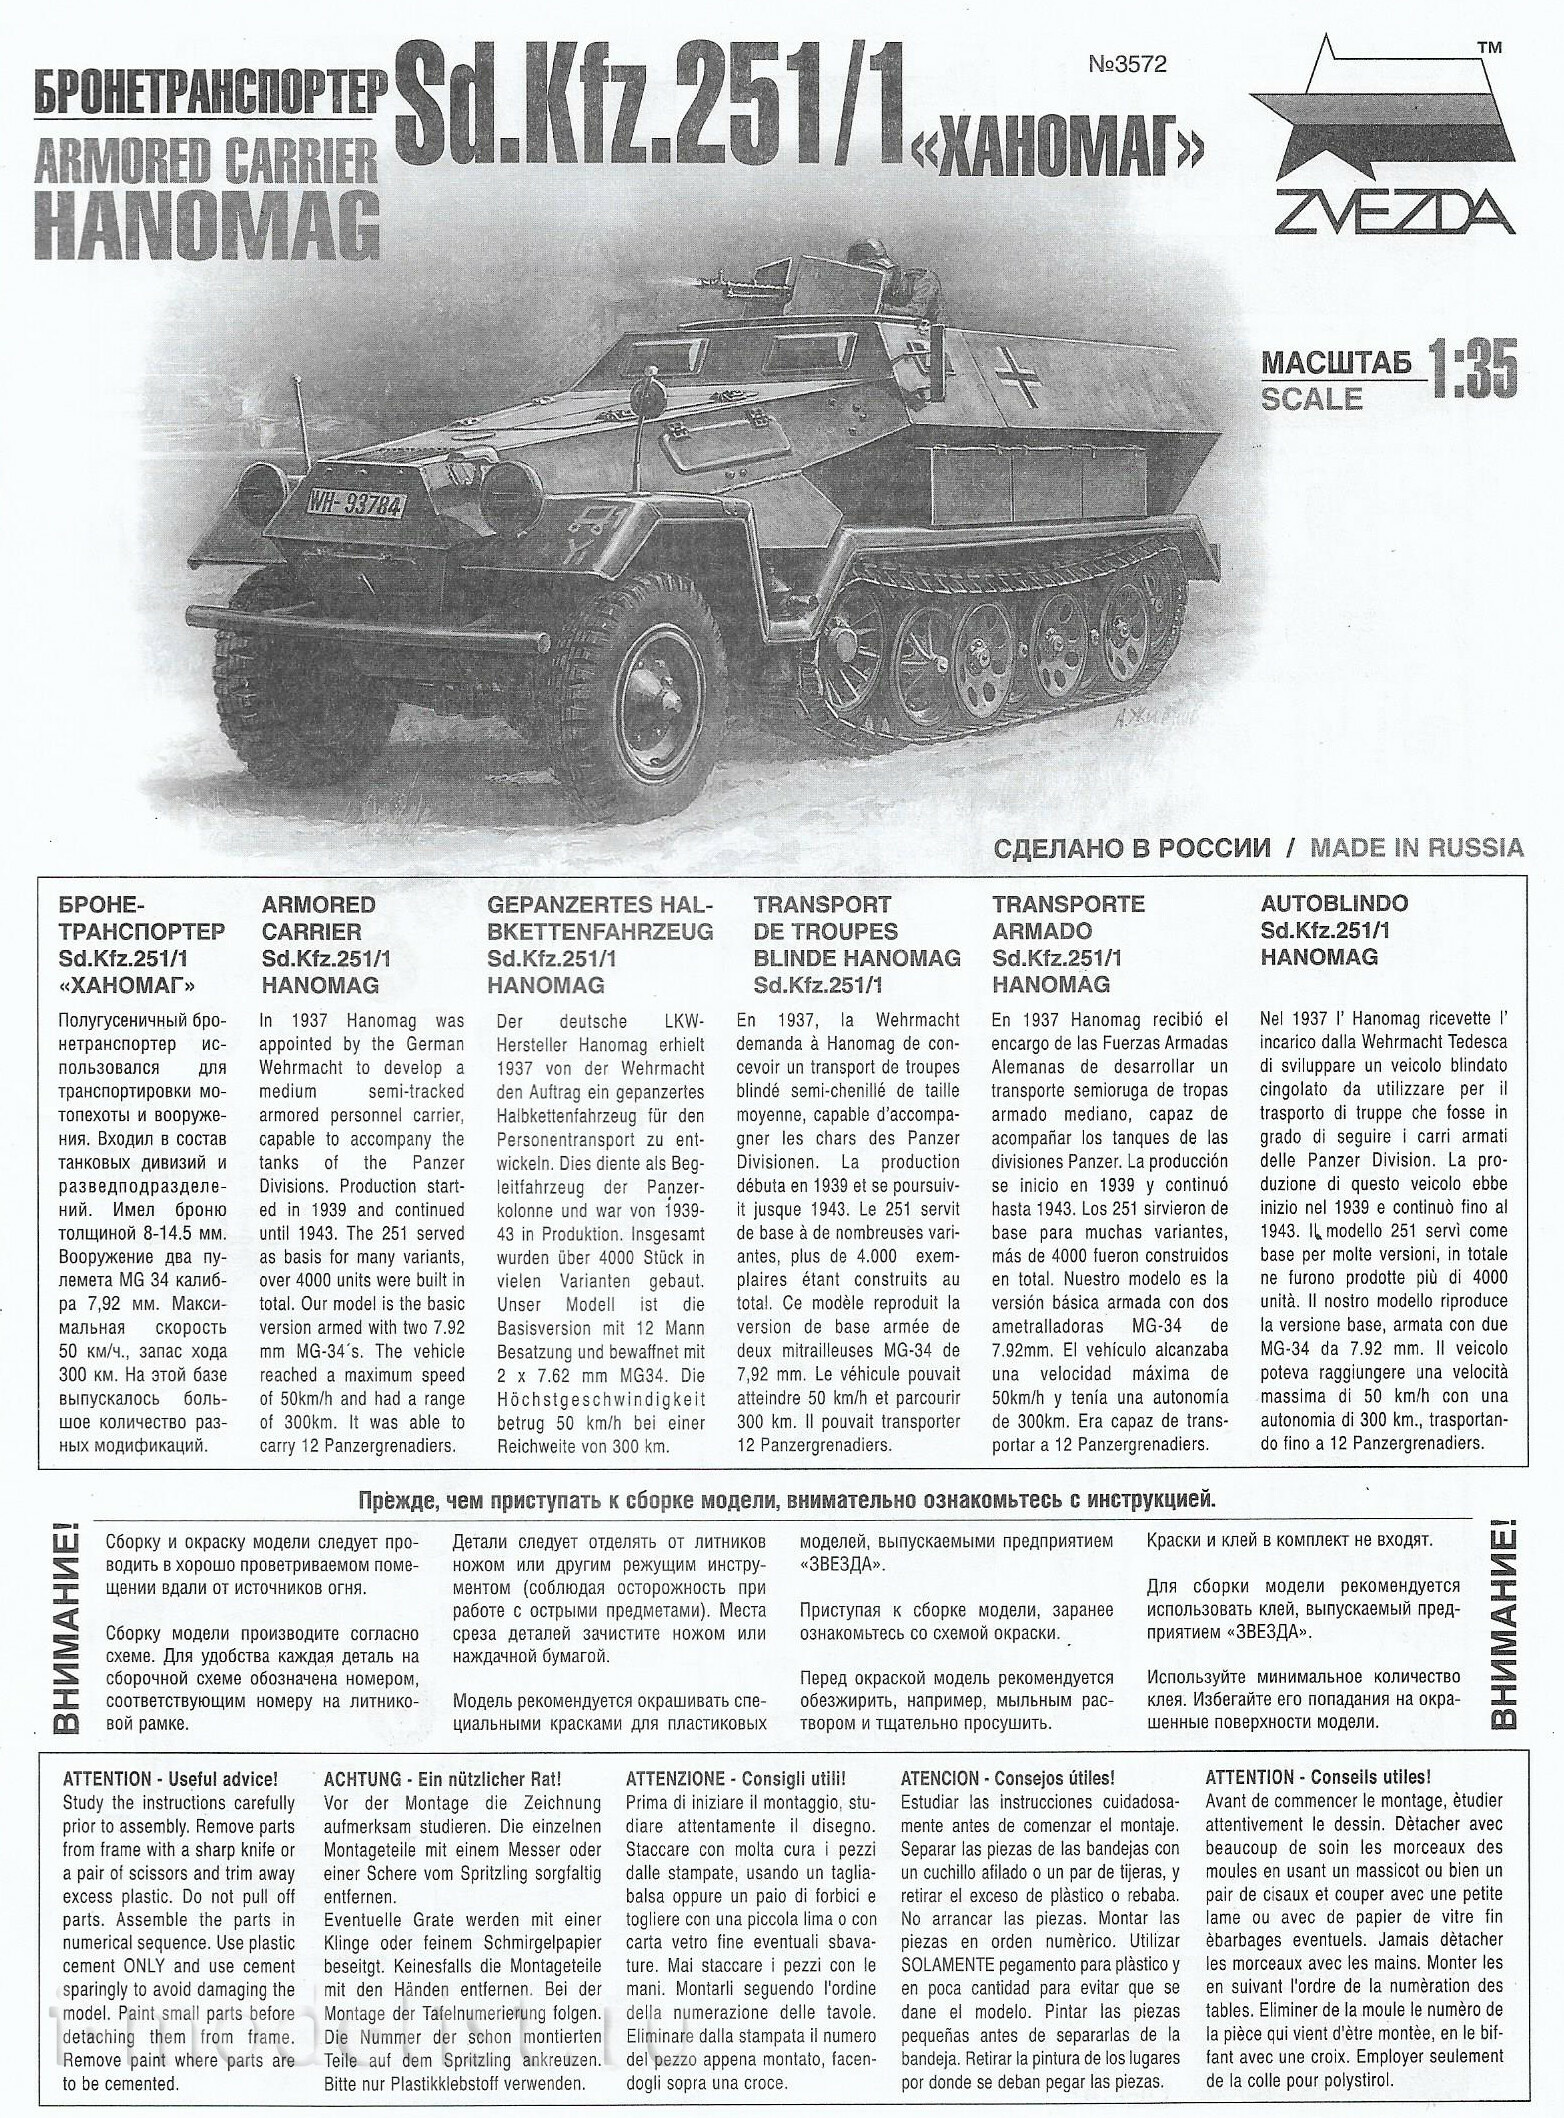 1/35 Zvezda 3572 Hanomag Ausf. B